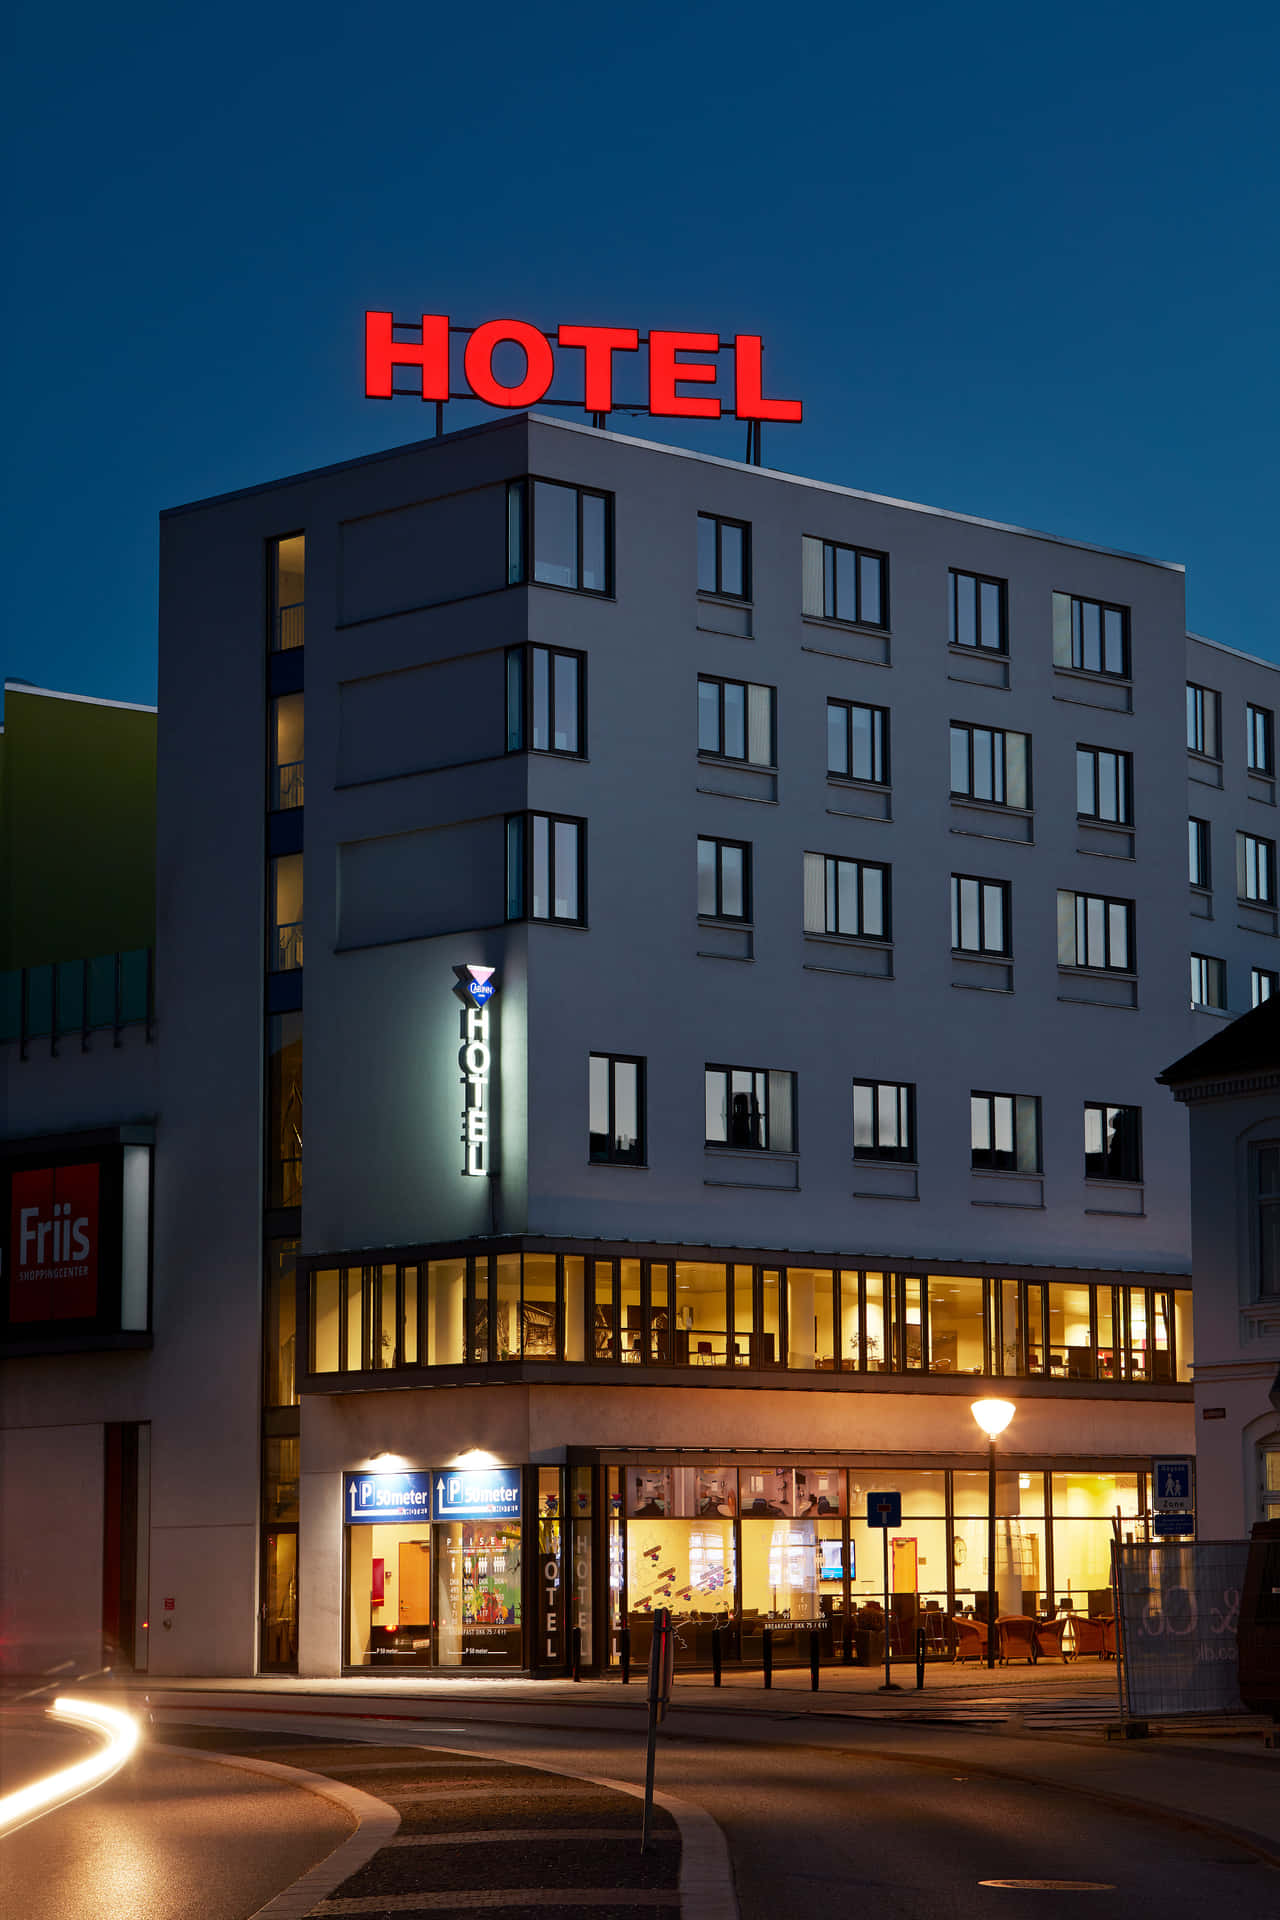 Einhotelgebäude Mit Einem Schild